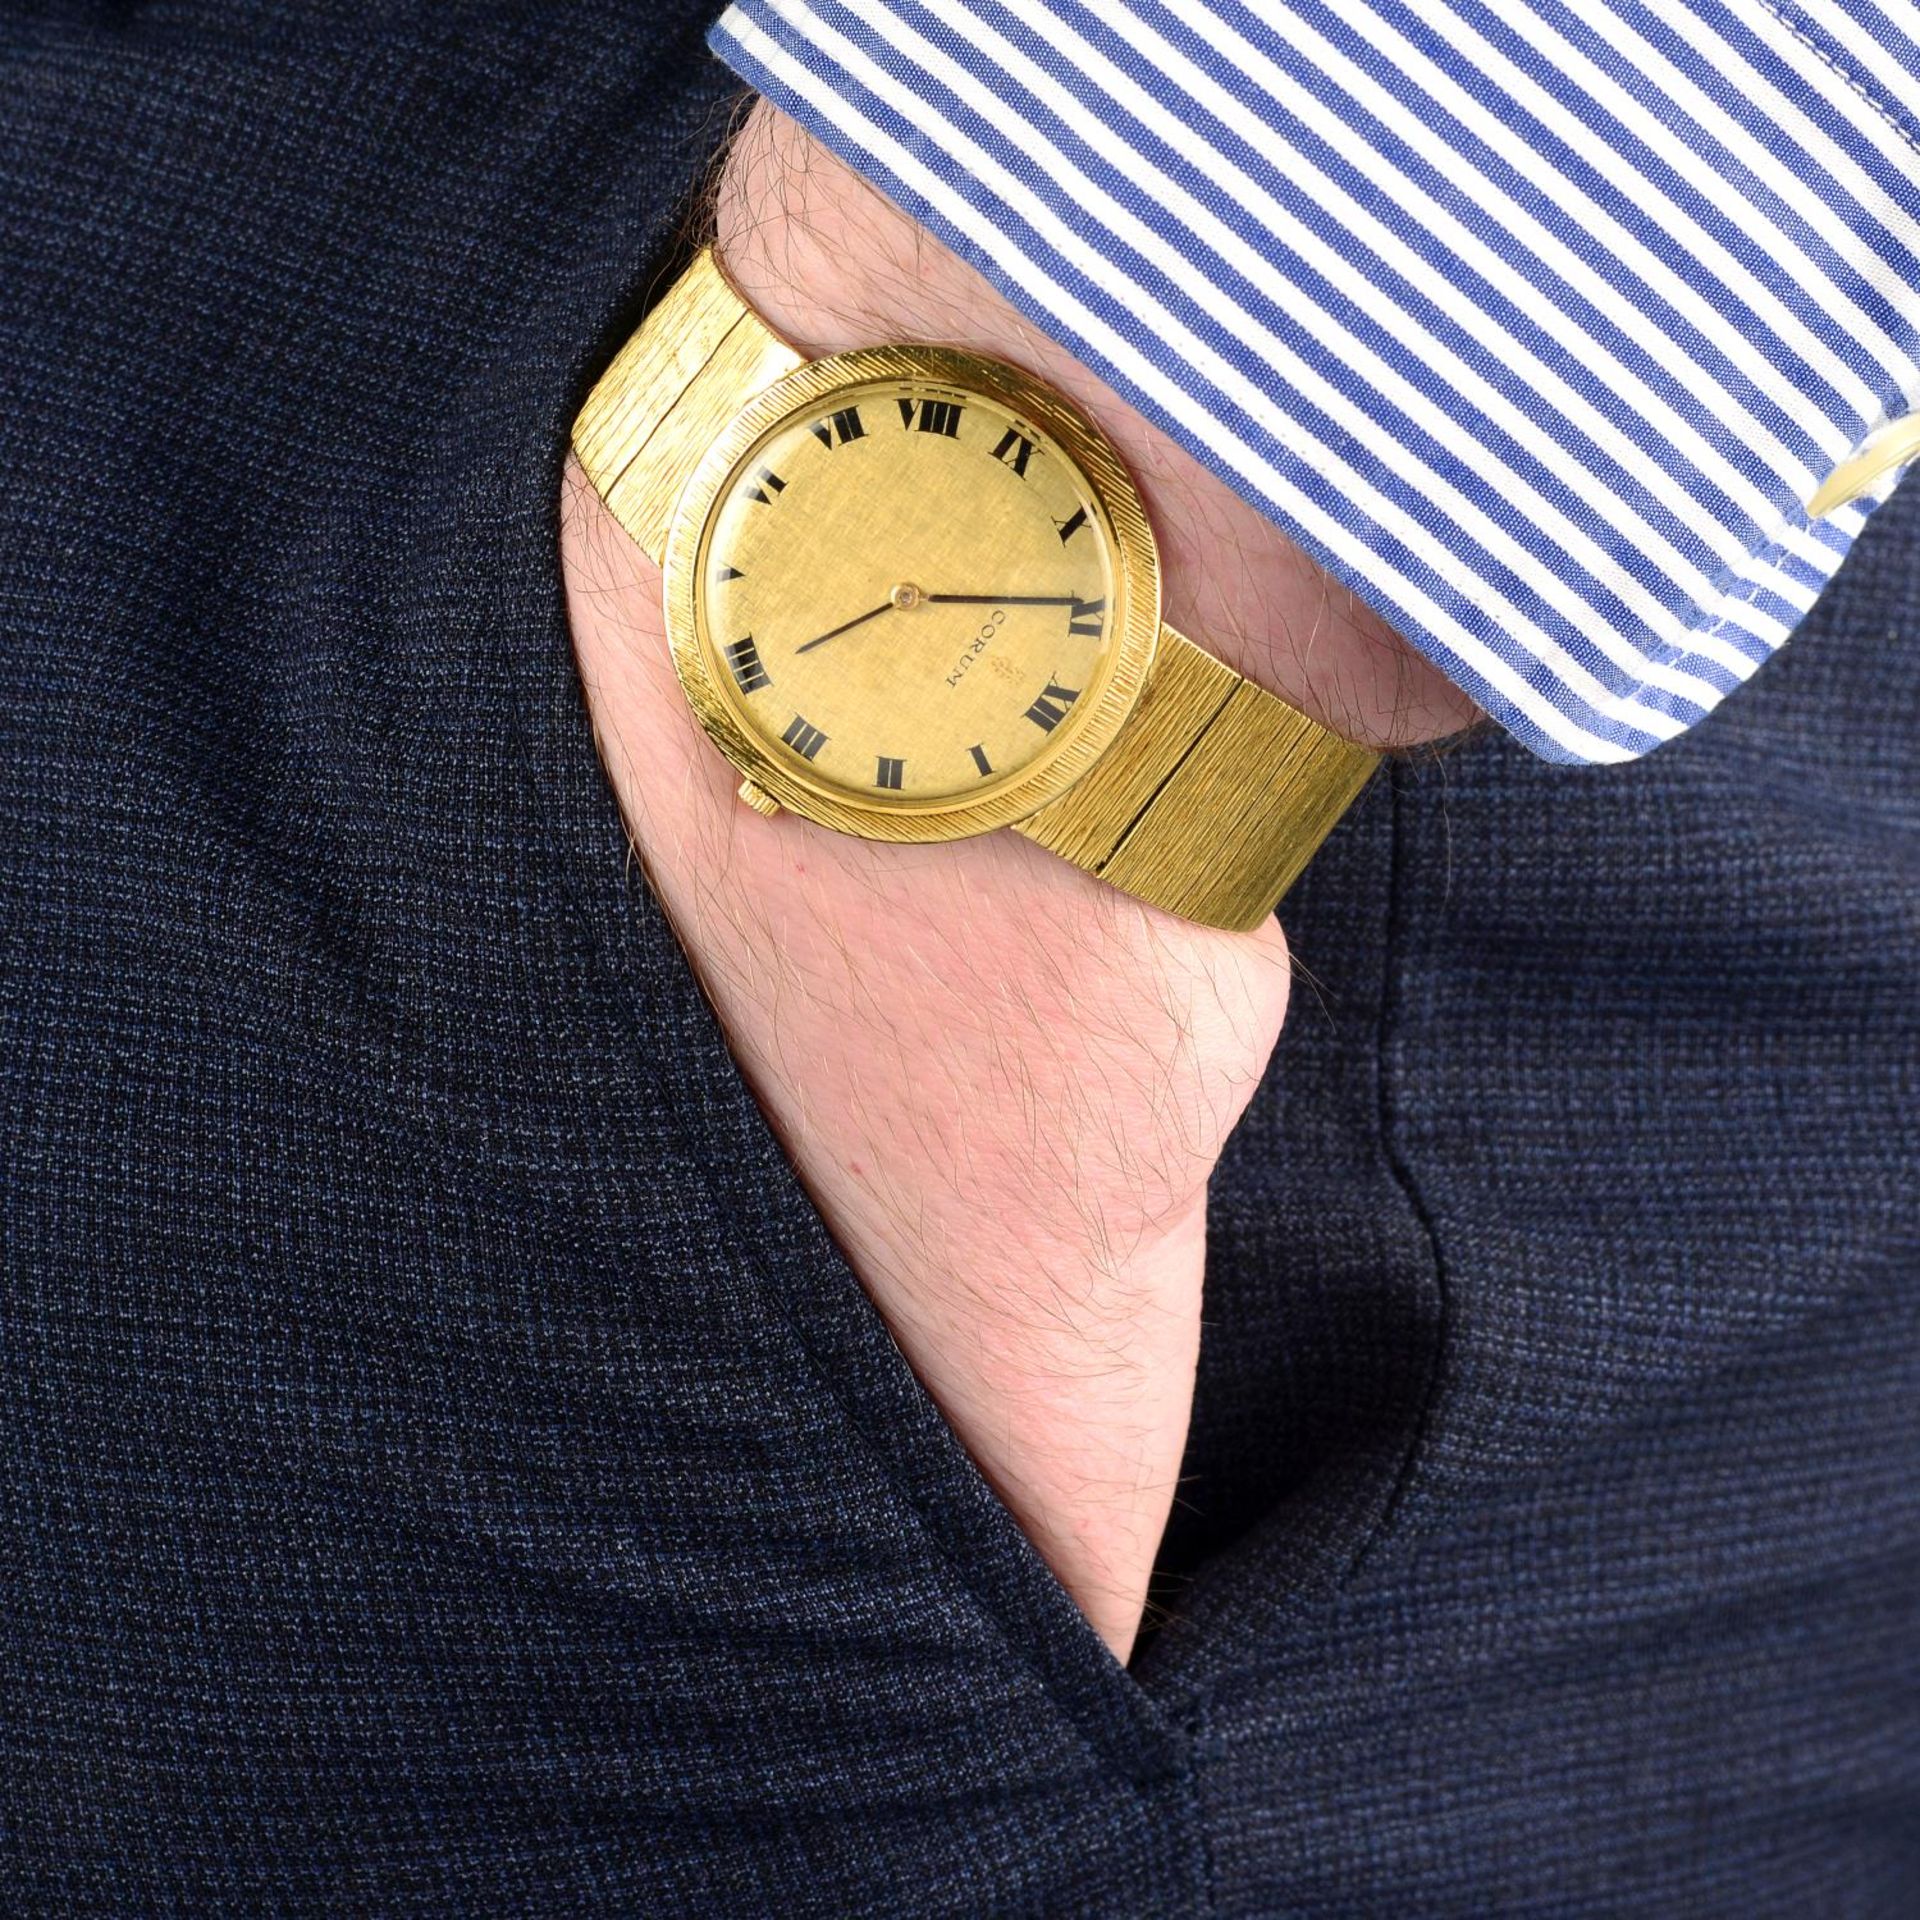 CORUM - a gentleman's bracelet watch. - Image 3 of 5